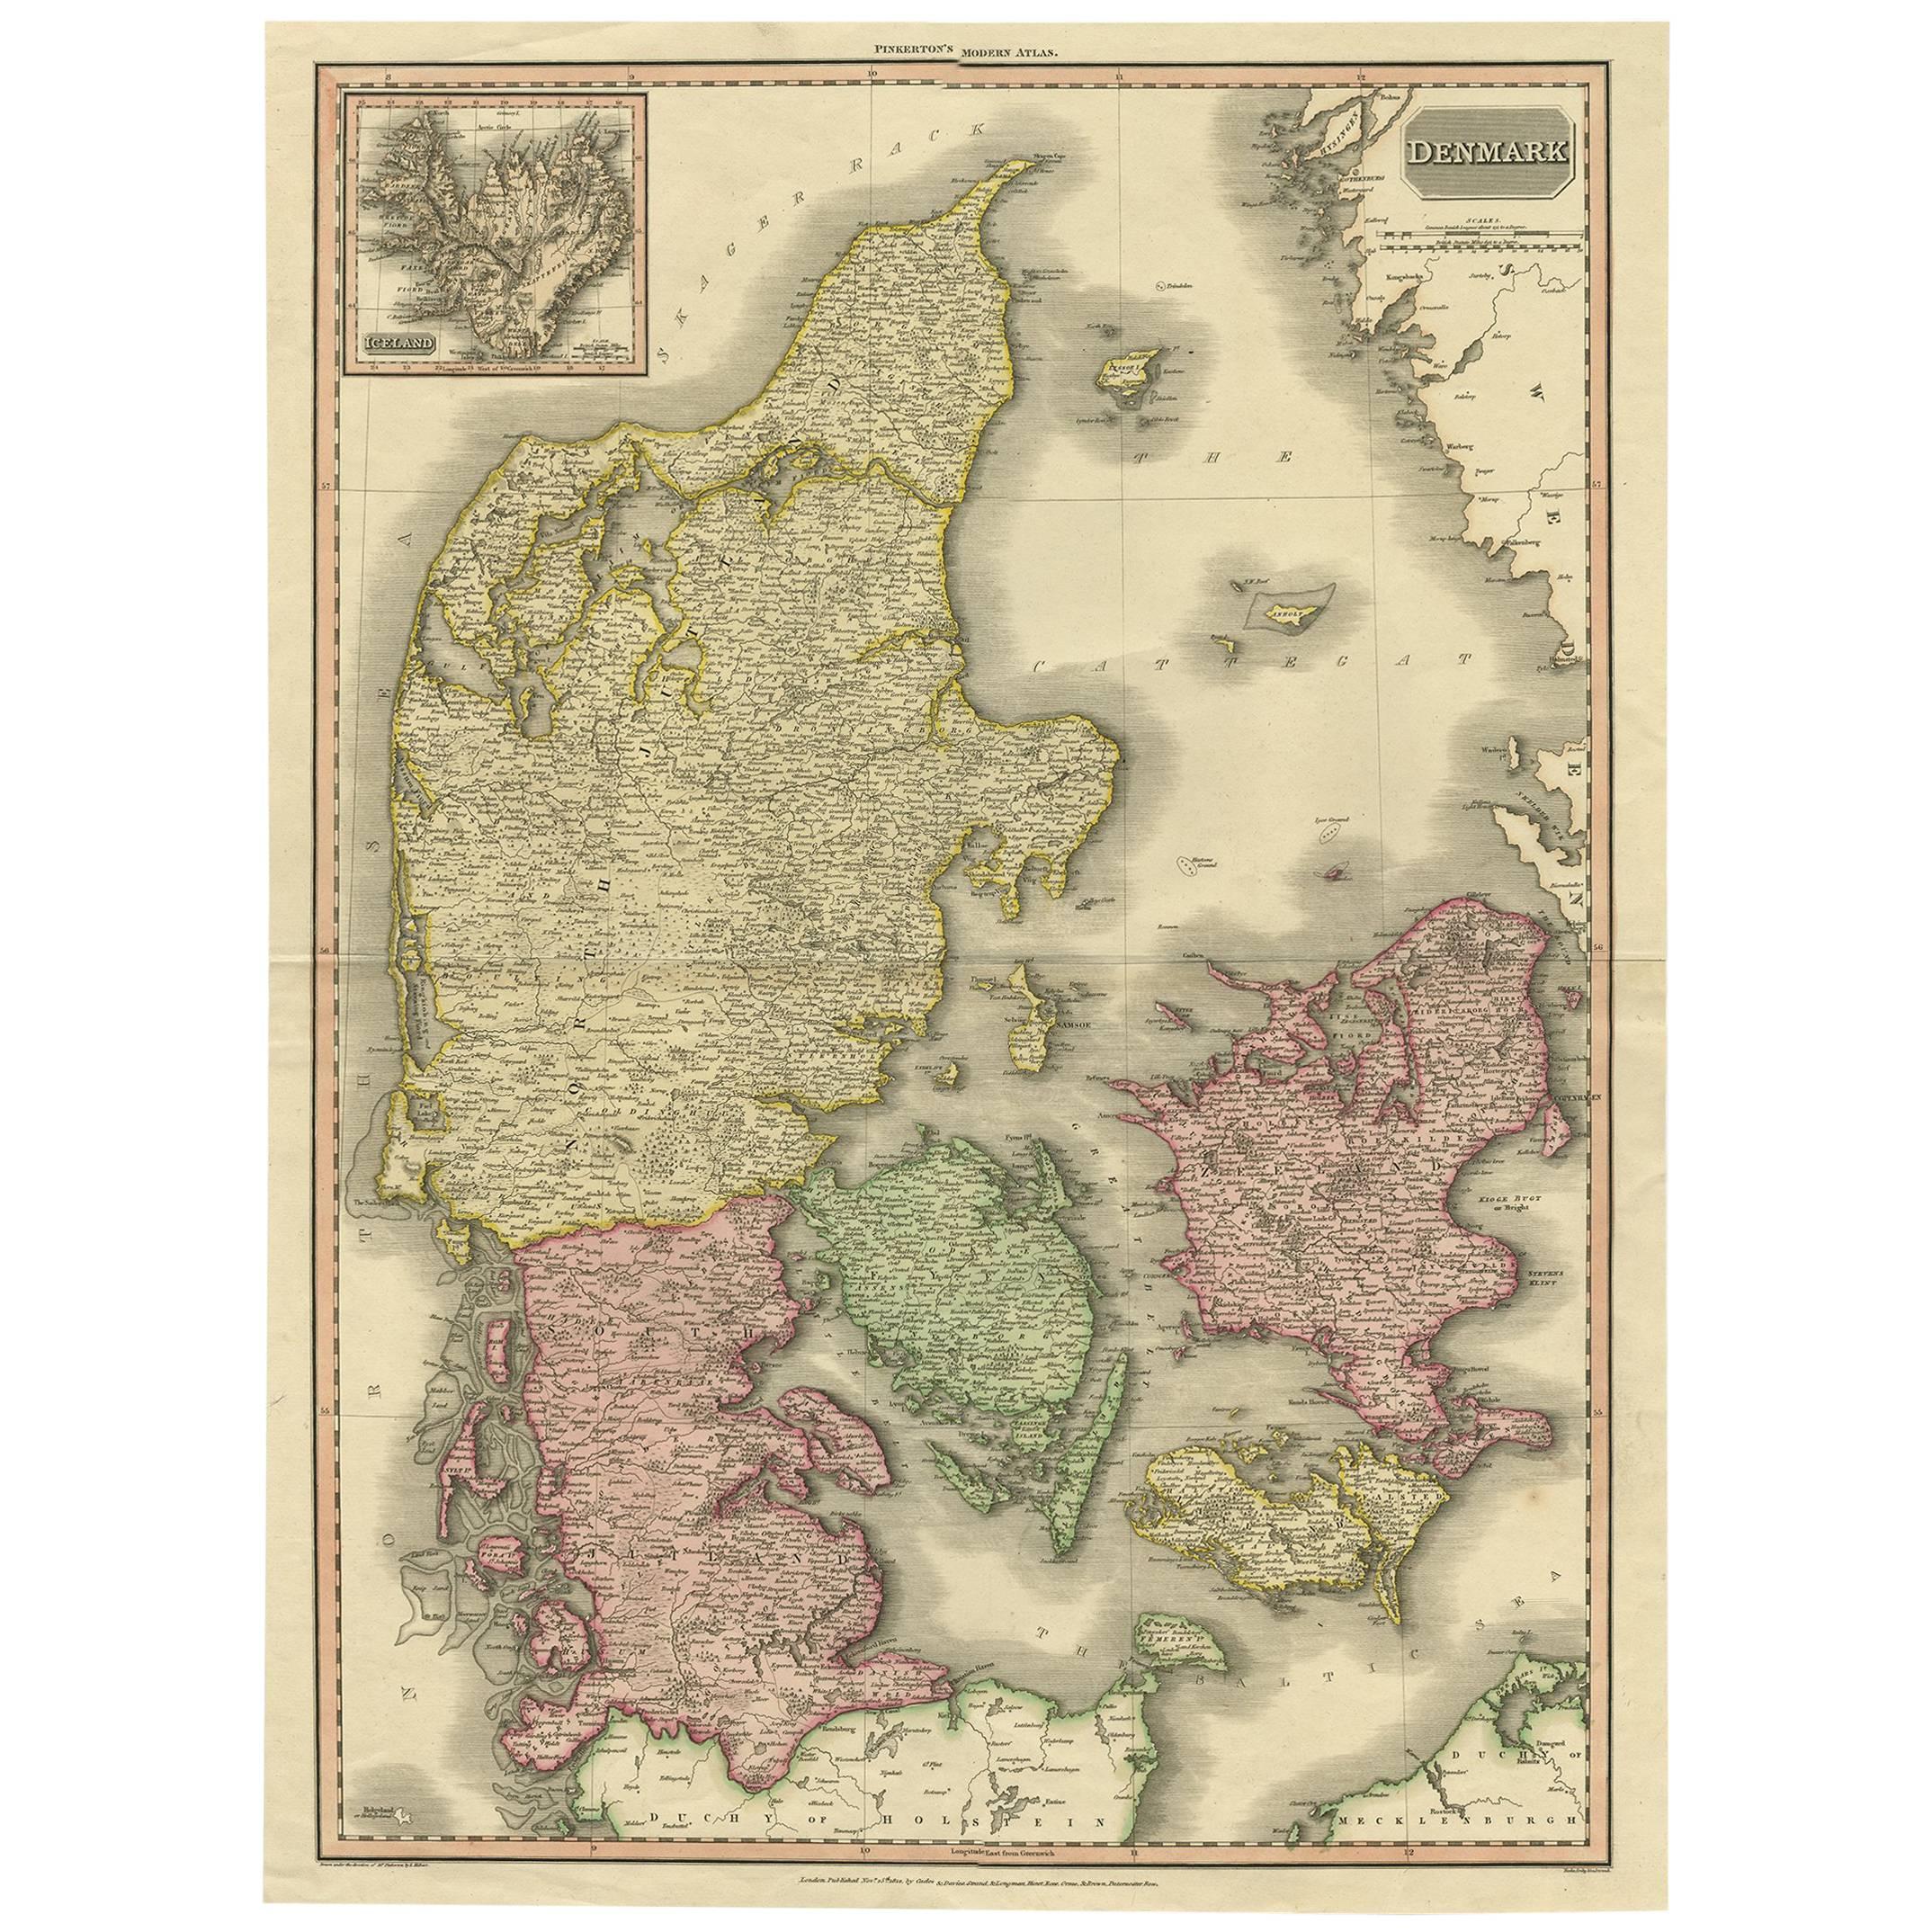 Große originale antike Originalkarte von Dänemark des 19. Jahrhunderts von J. Pinkerton, 1812